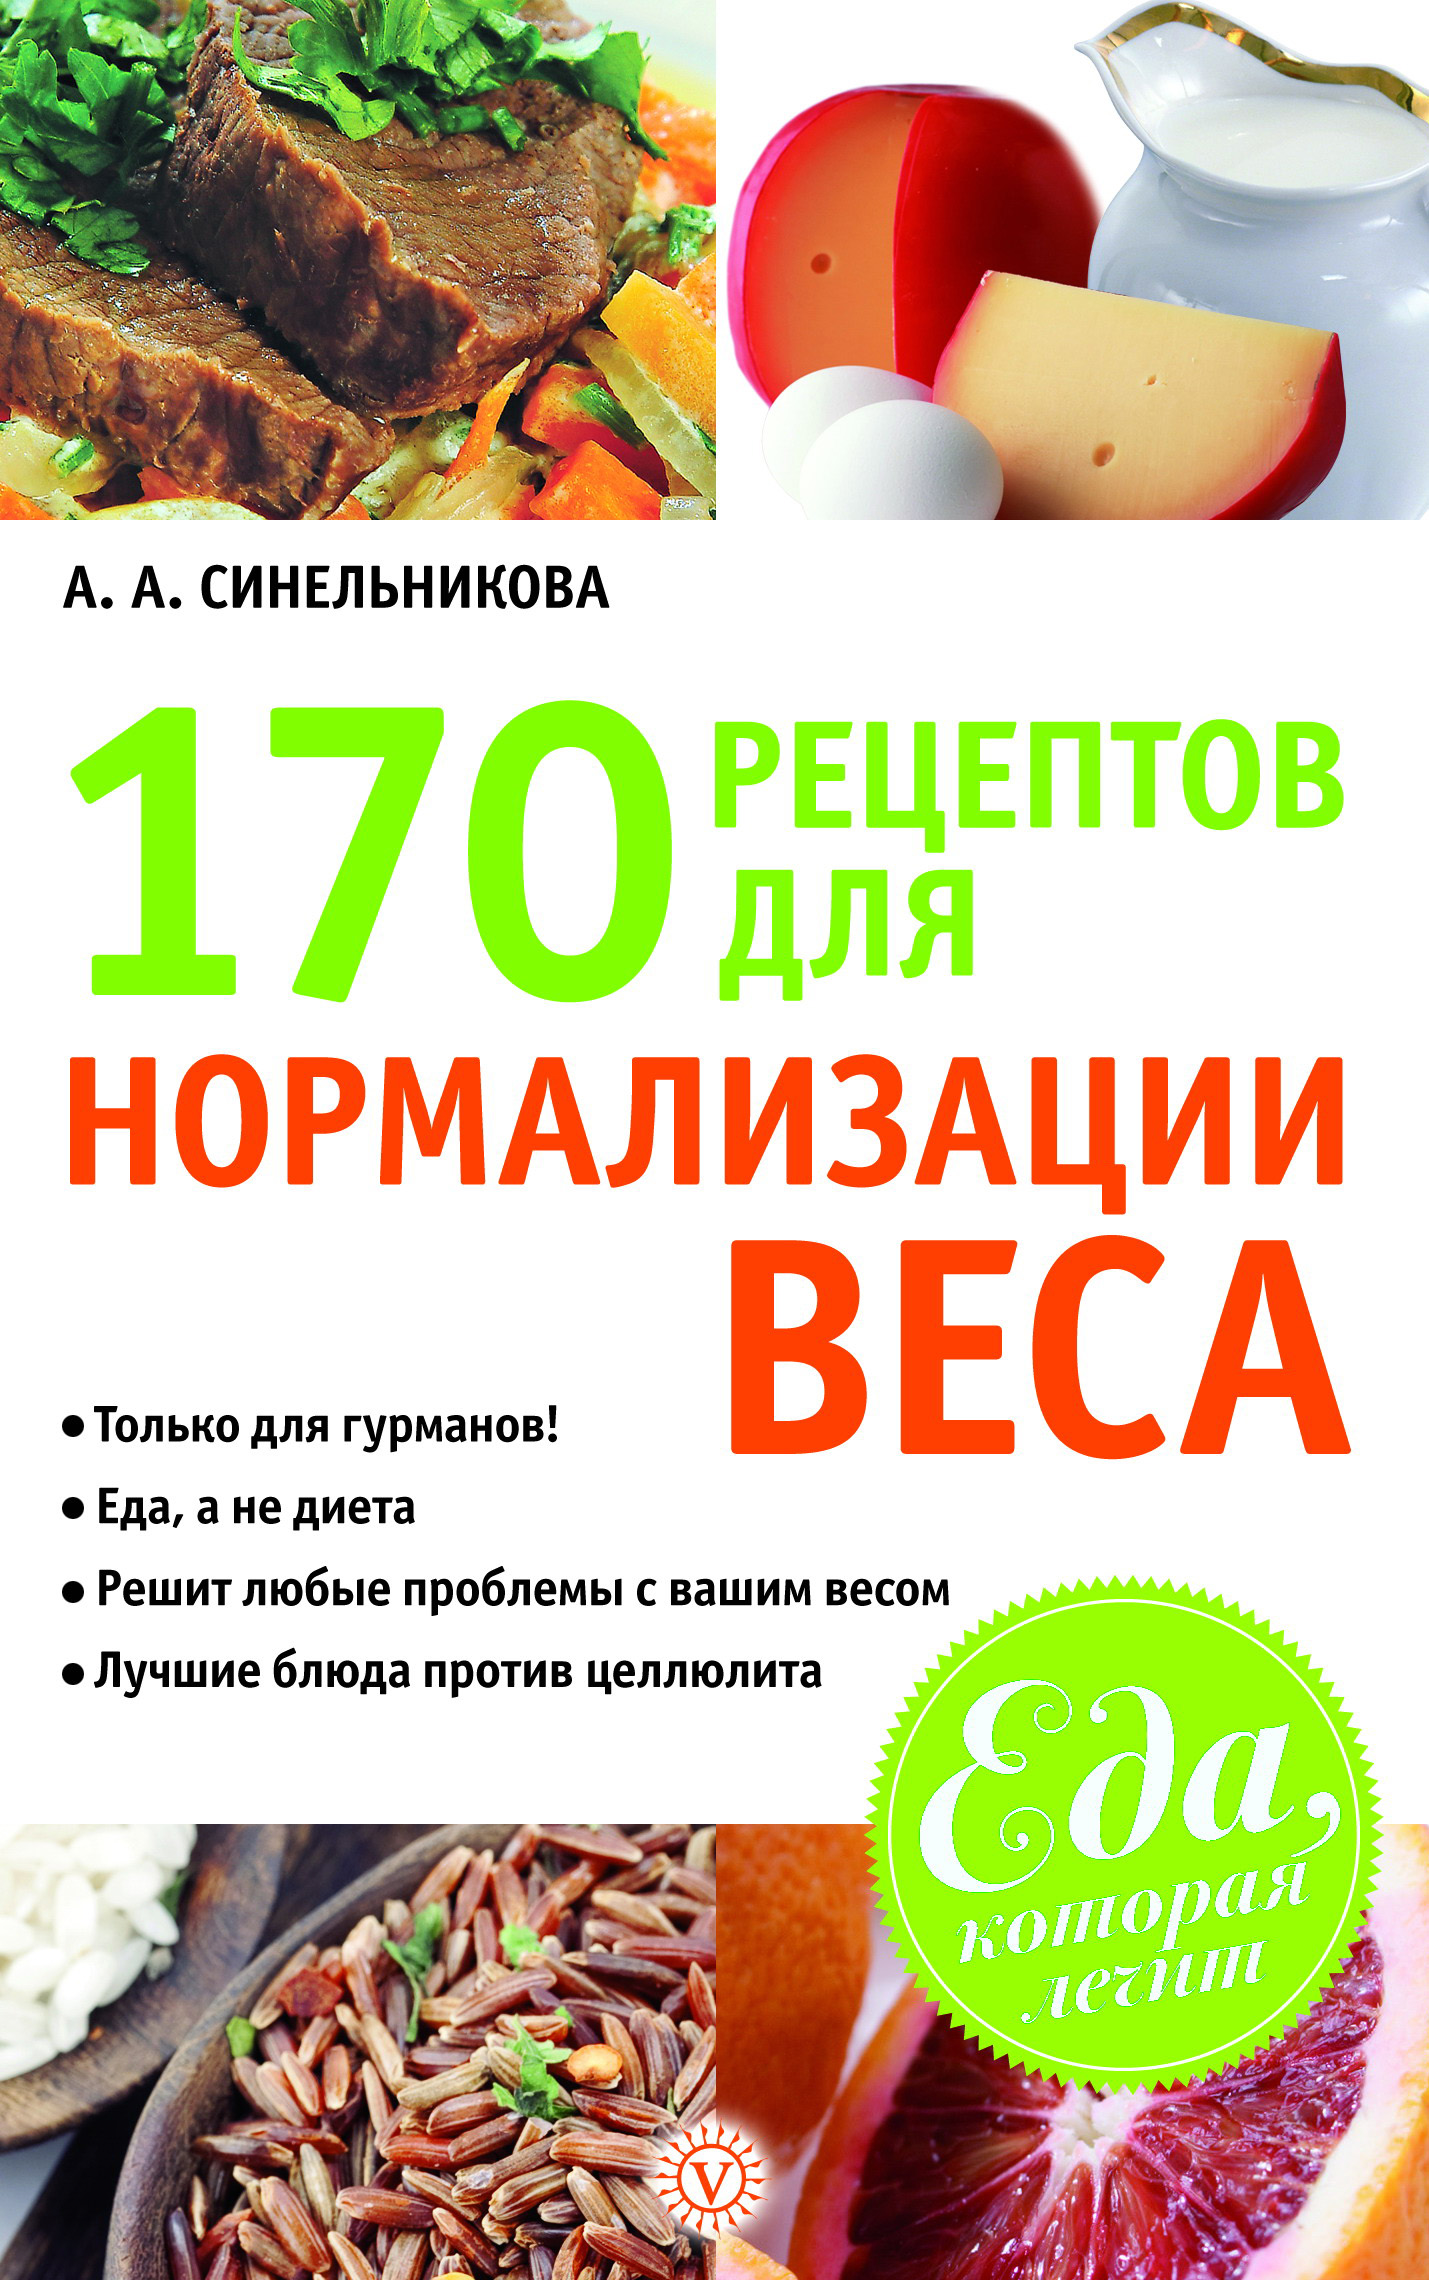 Книга 170 рецептов для нормализации веса из серии Еда, которая лечит, созданная А. Синельникова, может относится к жанру Здоровье, Кулинария. Стоимость электронной книги 170 рецептов для нормализации веса с идентификатором 6507098 составляет 29.95 руб.